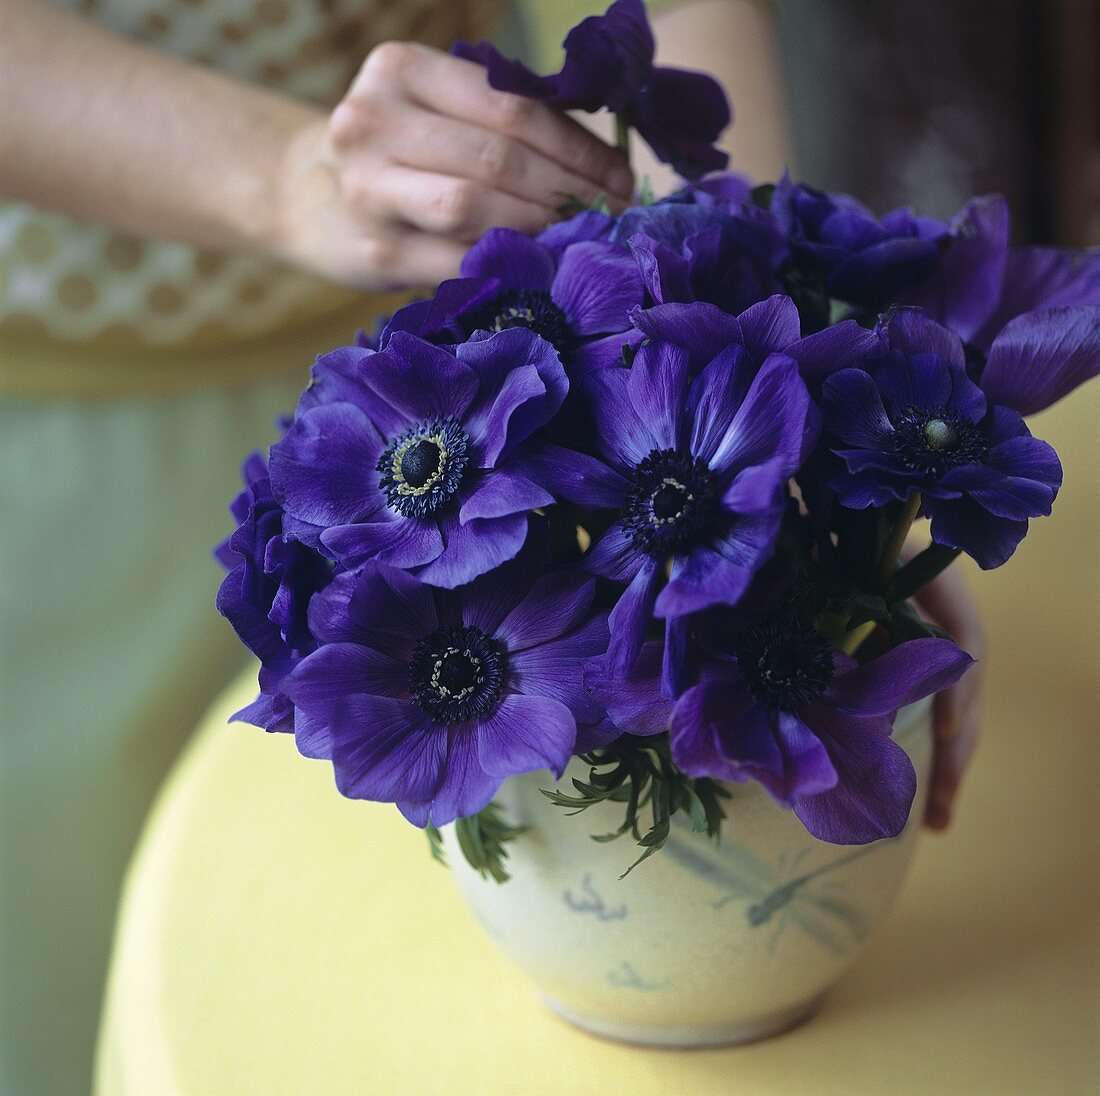 Frau steckt lilafarbene Anemonen in eine Vase